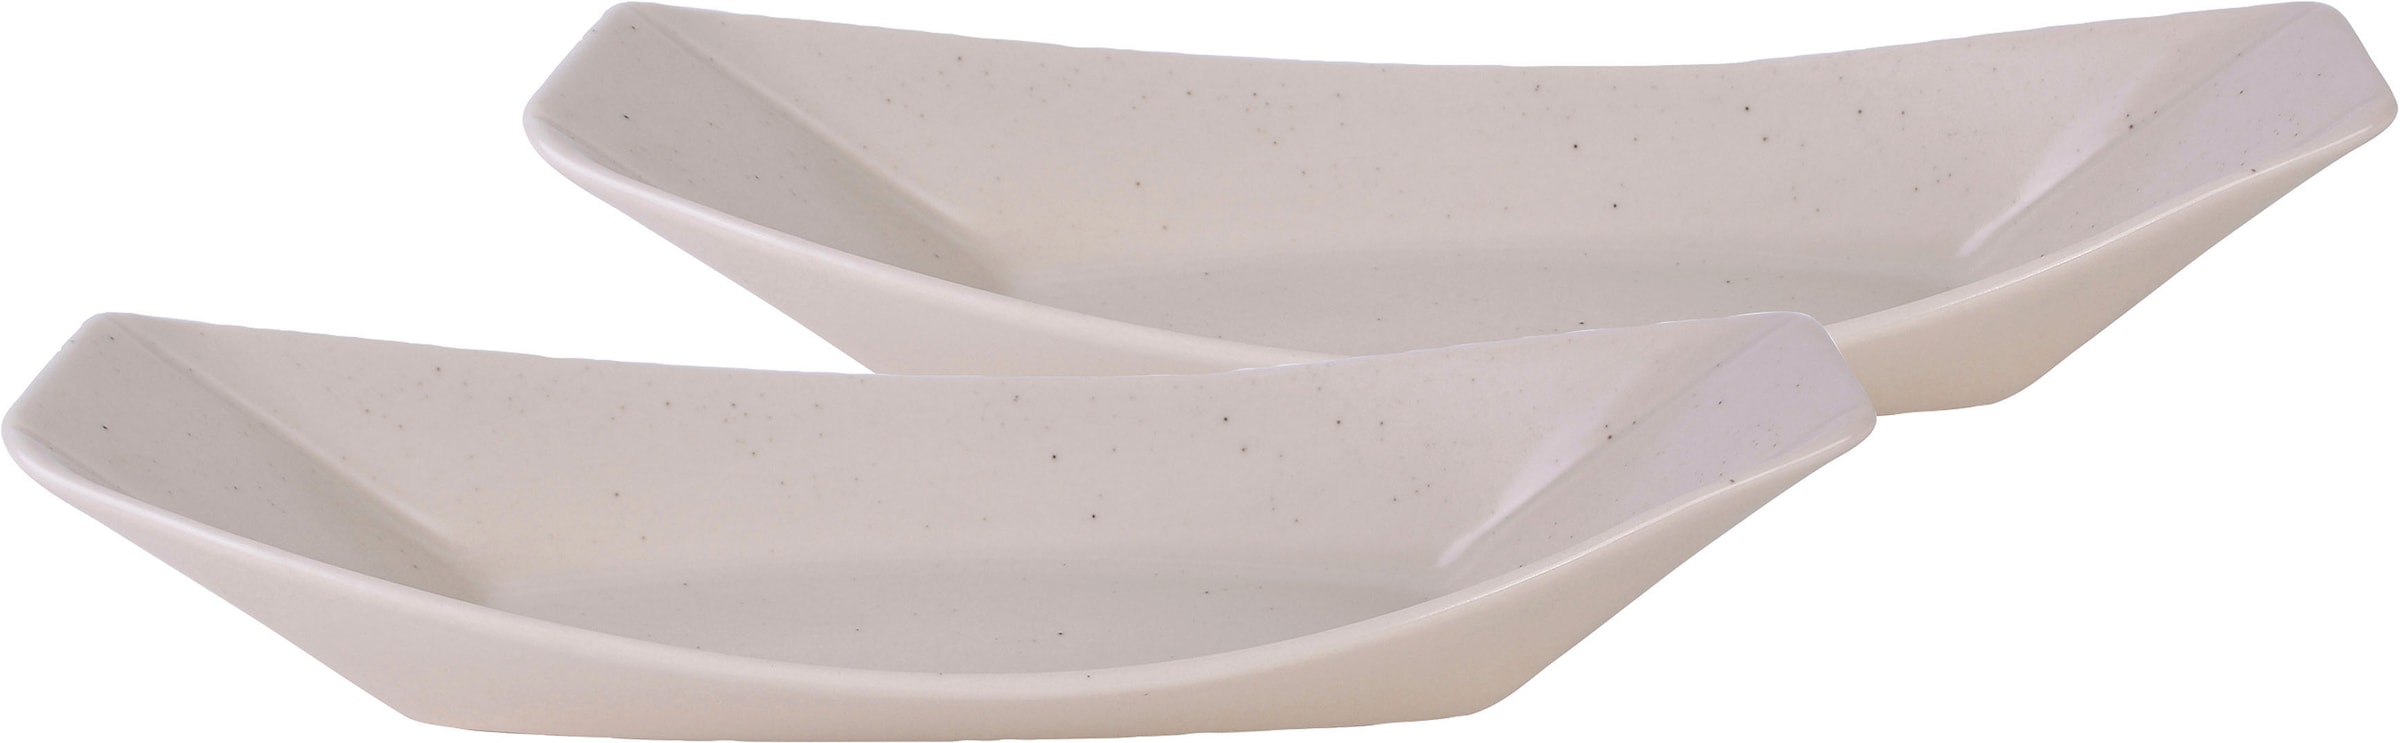 GILDE Schale »Boat«, 1 tlg., aus Alumimium, Antik-Finish, silberfarbene  Struktur, ideal zum Dekorieren bei OTTO